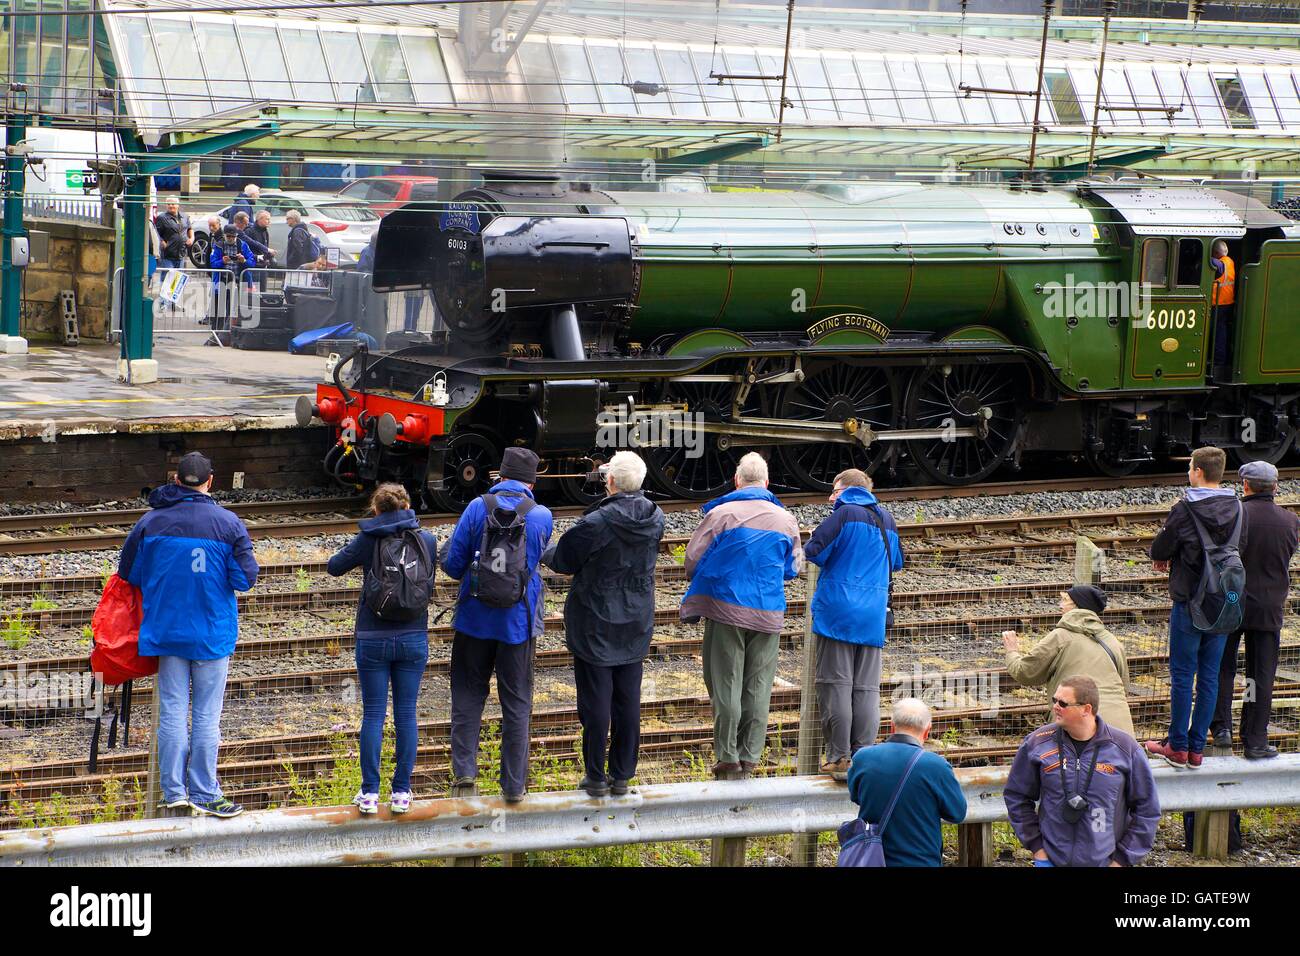 Passionné de train à vapeur de la photographie. LNER Classe A3 4-6-2 no 60103 Flying Scotsman. La gare de Carlisle, Carlisle, Cumbria. Banque D'Images